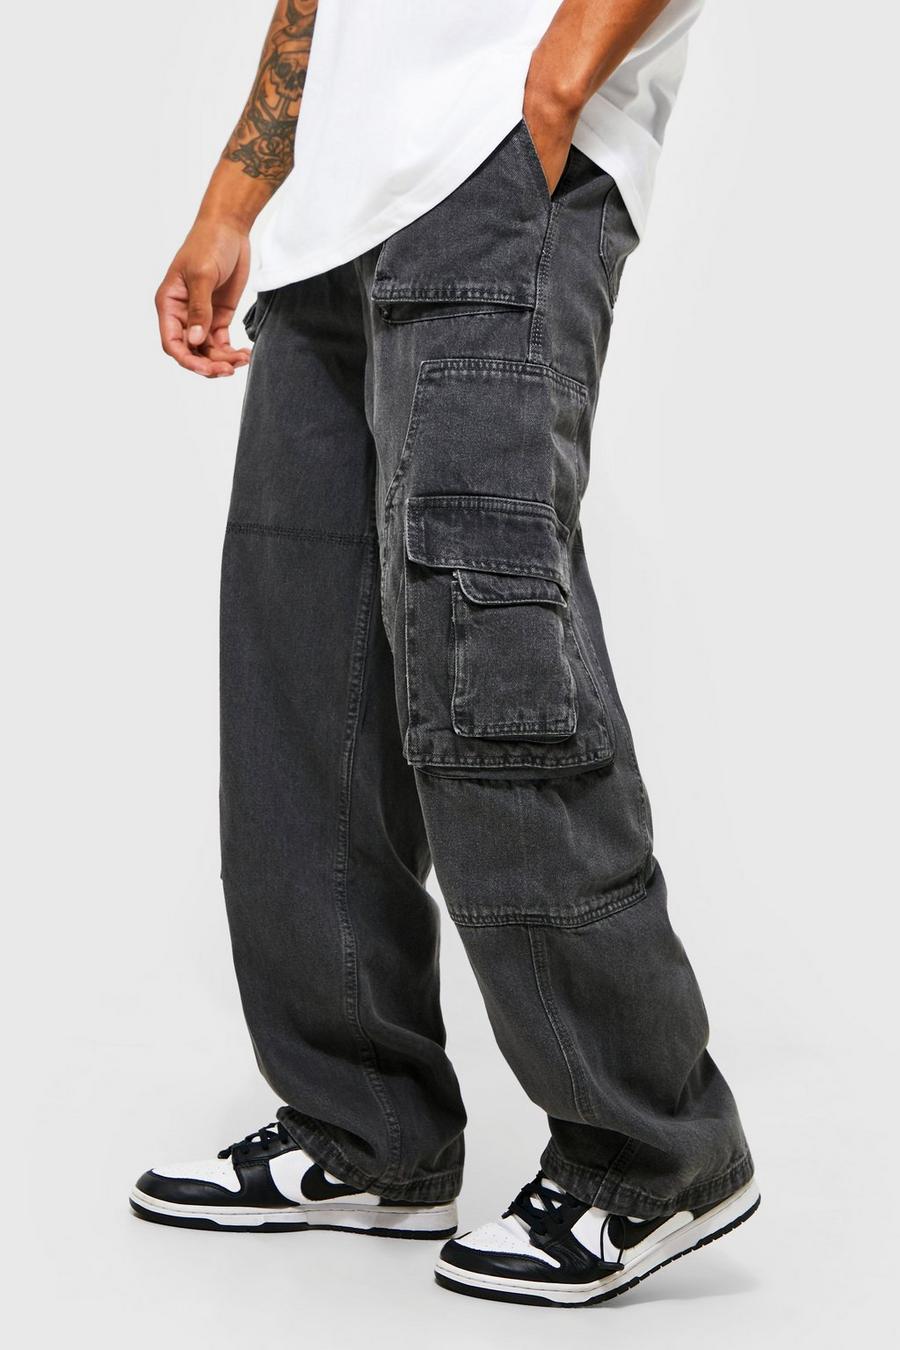 https://media.boohoo.com/i/boohoo/bmm21199_grey_xl/male-grey-baggy-fit-carpenter-panel-cargo-jeans/?w=900&qlt=default&fmt.jp2.qlt=70&fmt=auto&sm=fit